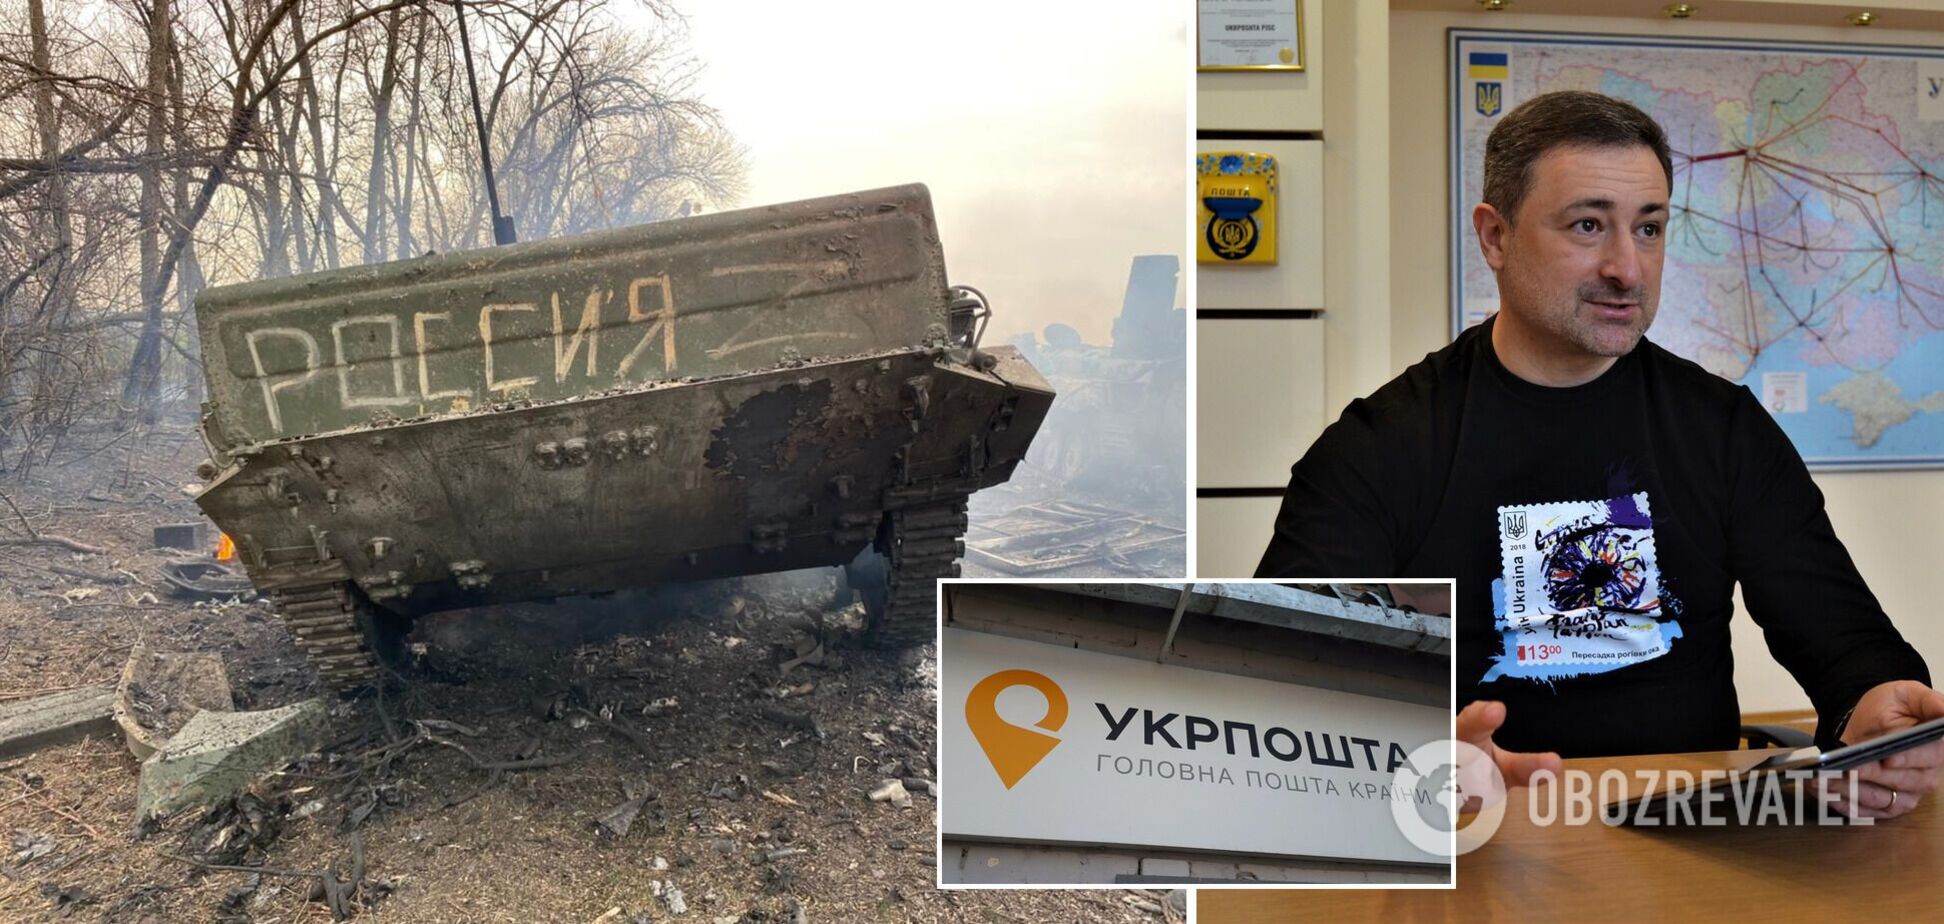 Оккупанты украли 3 млн гривен в отделении 'Укрпочты' в Мелитополе, Украина потребовала возврата